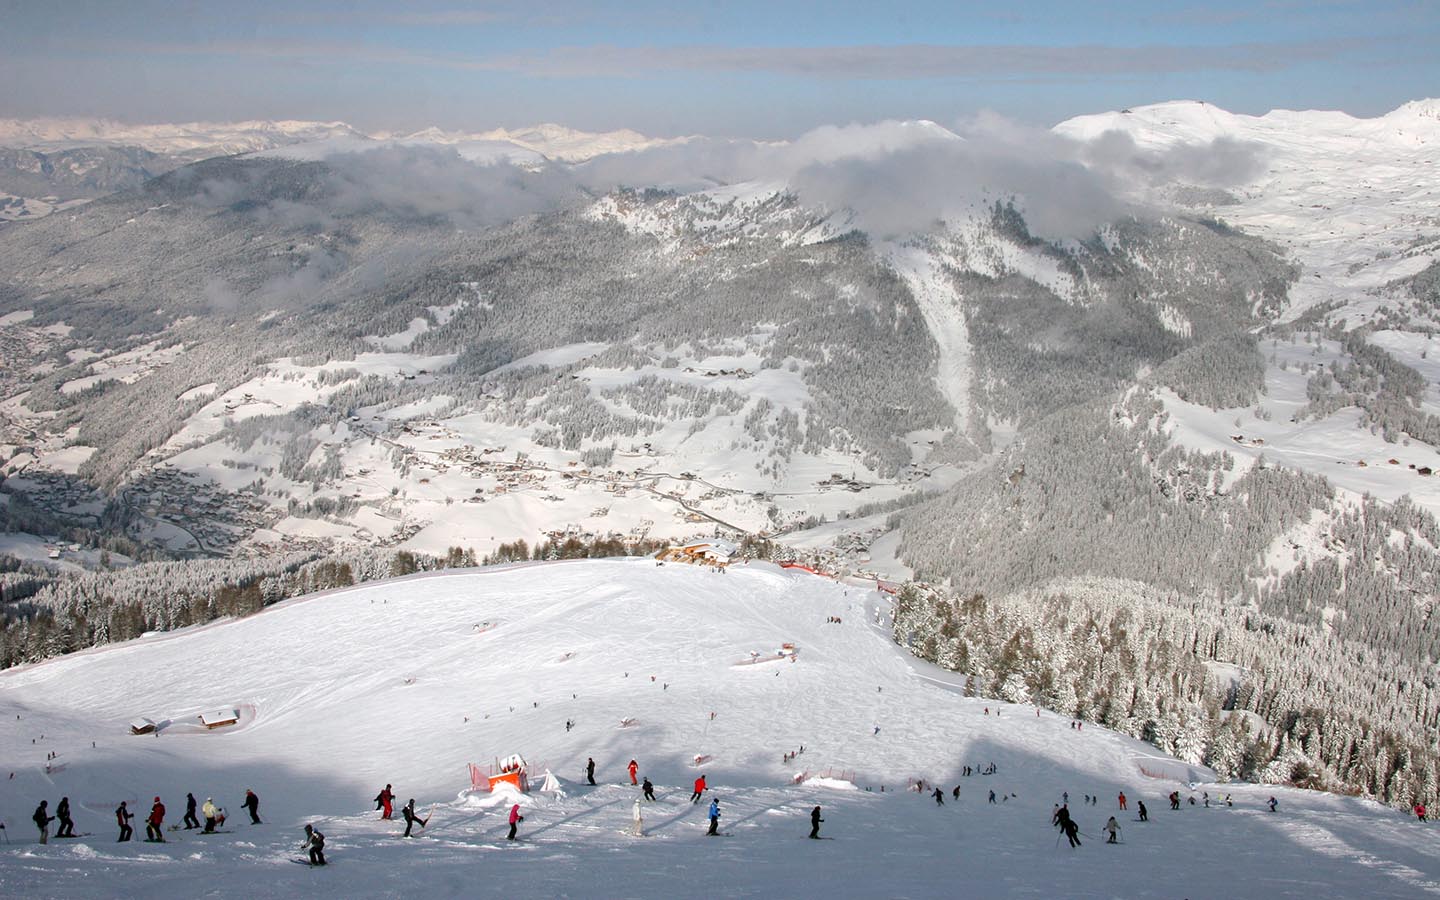 Ski slopes of Ciampinoi